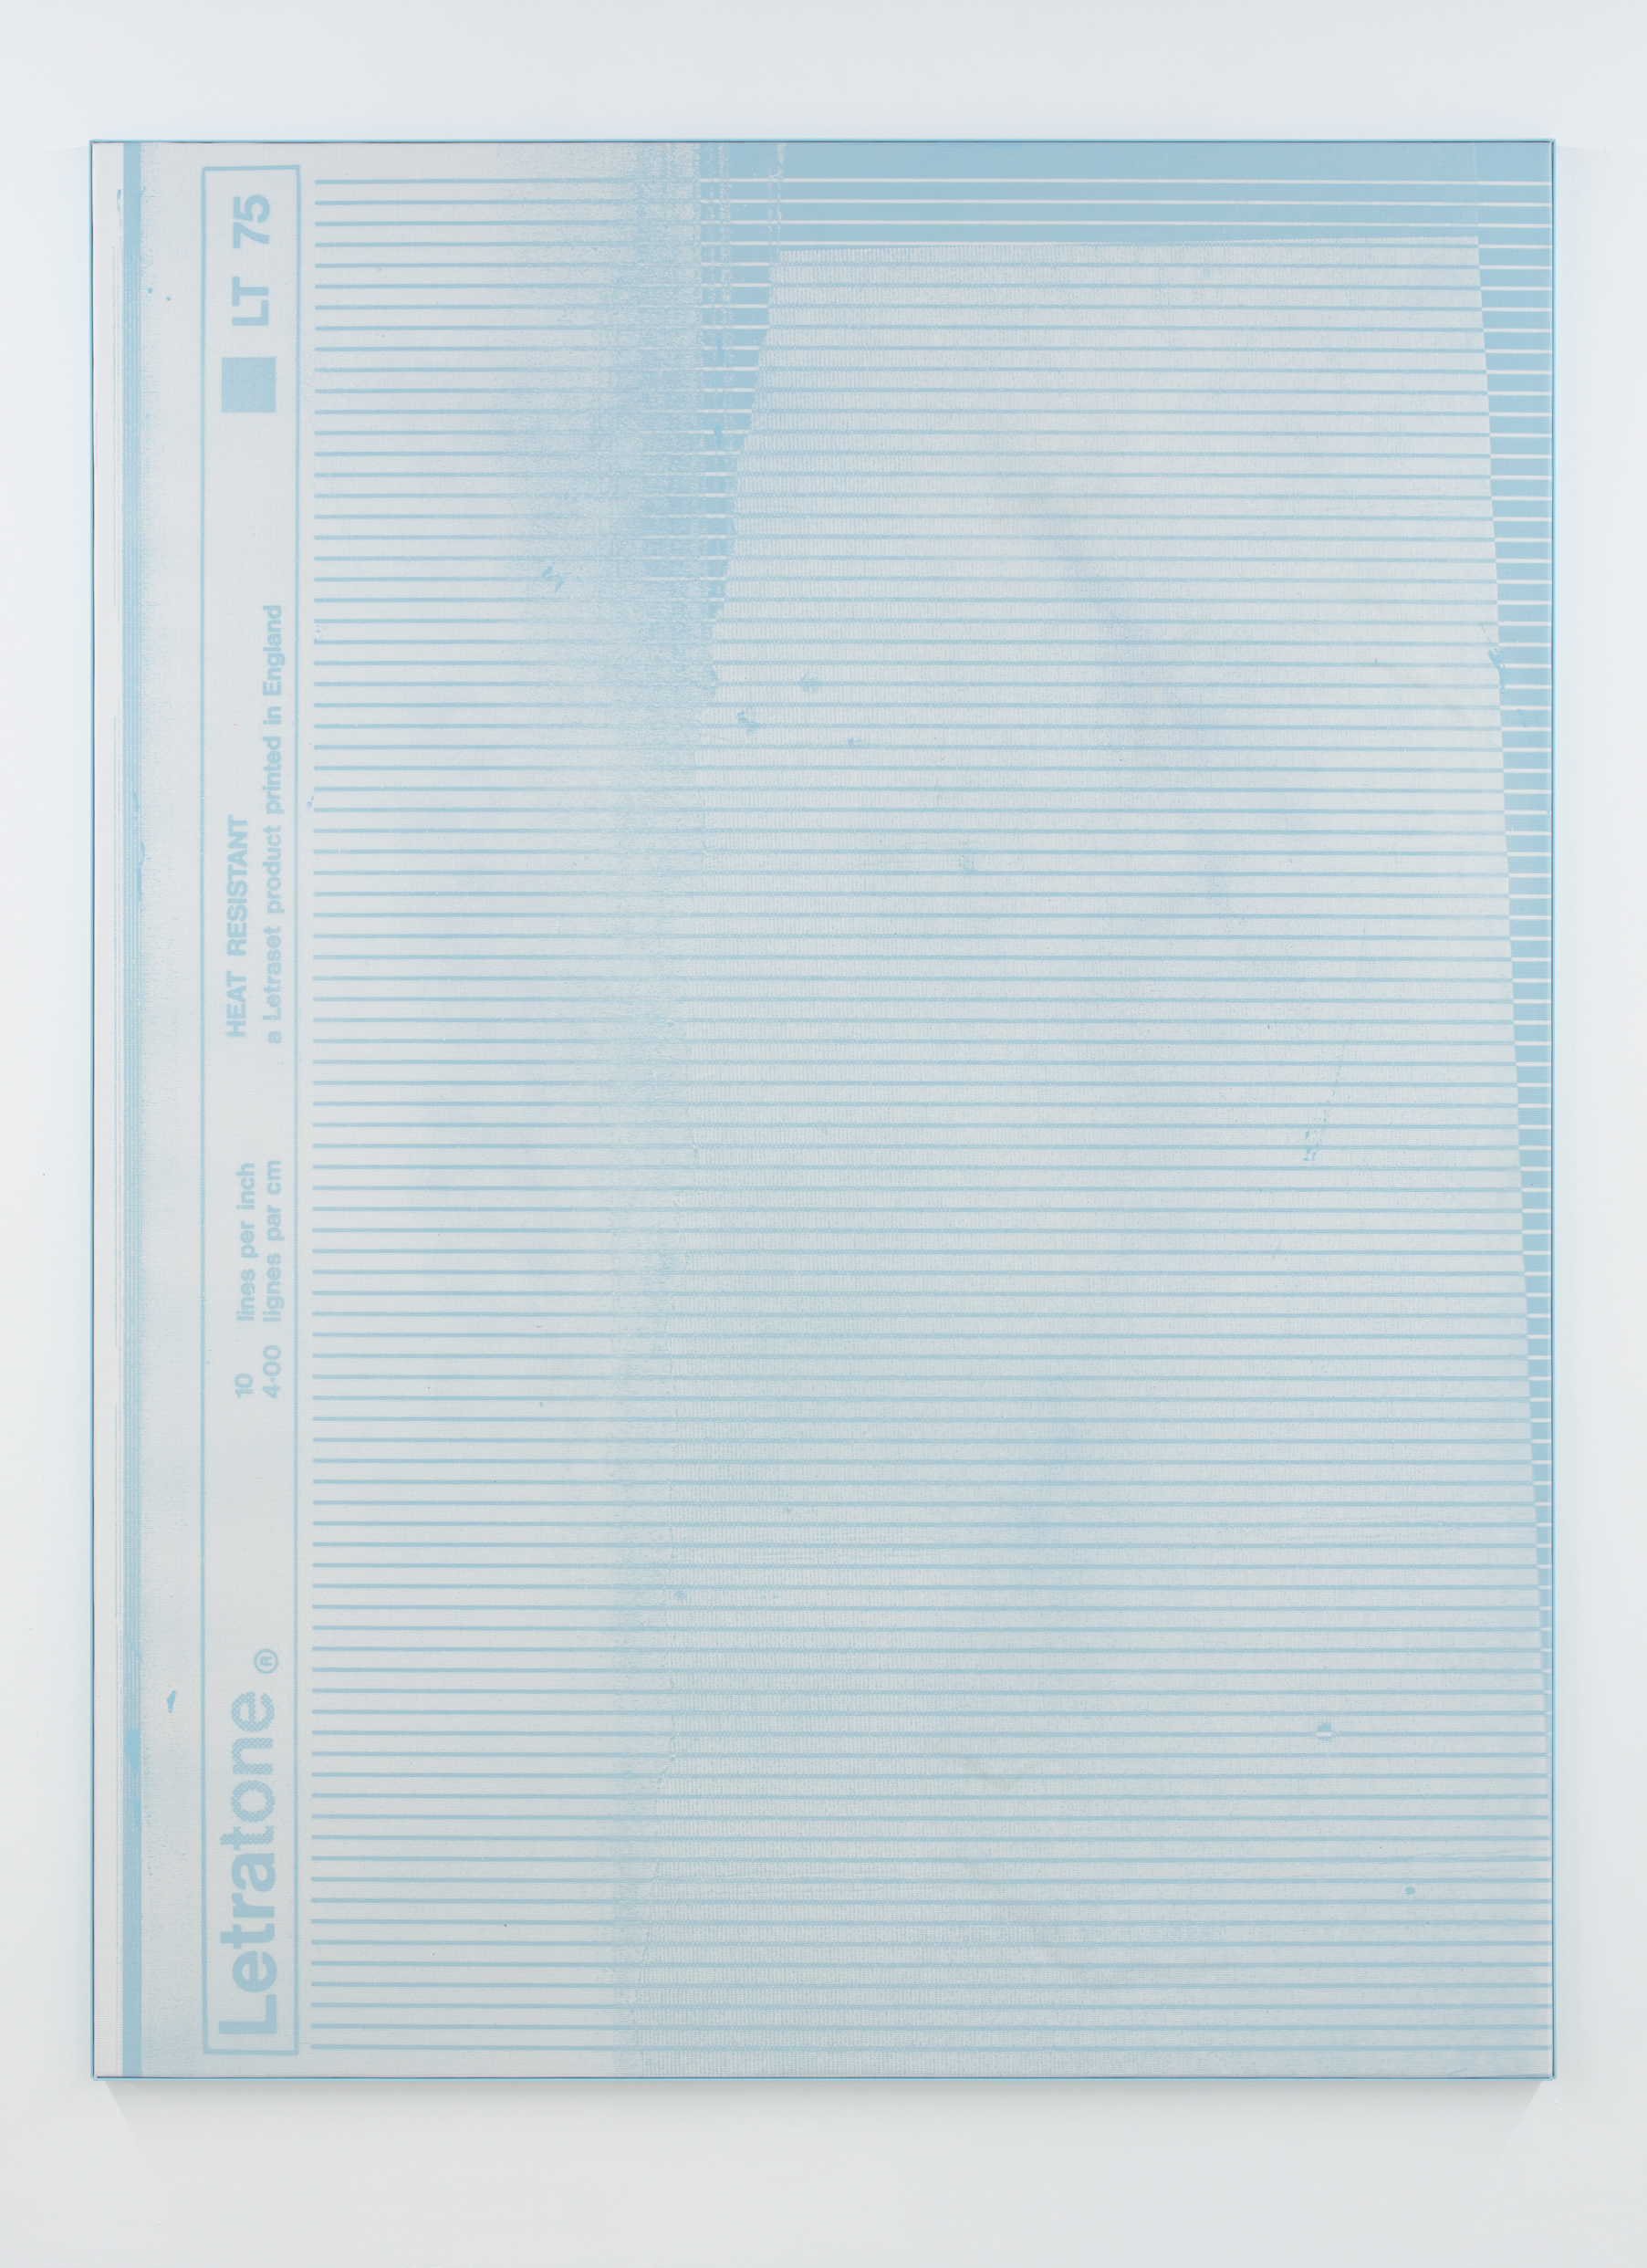 e-h-d-blue-monochrome-01-150x200cm-oil-acrylics-spraypaint-uv-print-mesh-fabric-on-canvas-aluminium-framed-2016